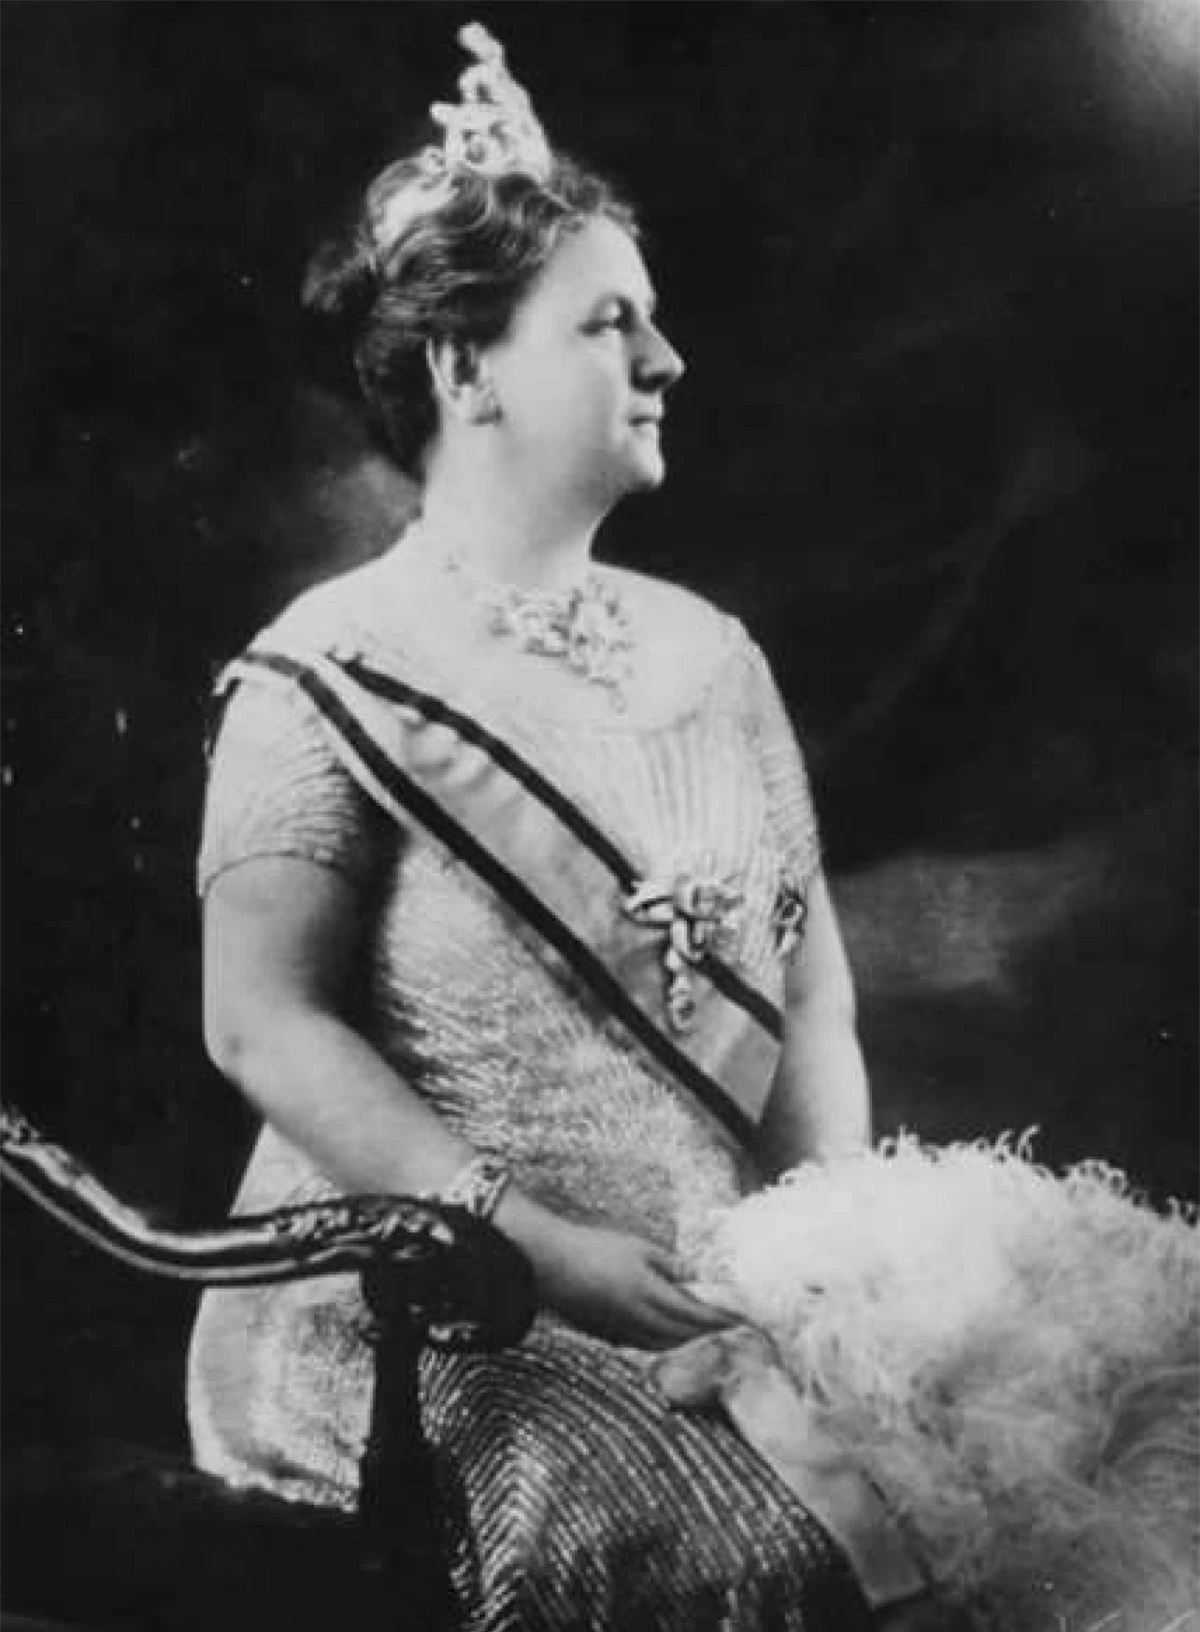 Nữ hoàng Wilhelmina I của Hà Lan. Wilhelmina trở thành hoàng hậu năm 10 tuổi, sau cái chết của cha bà. Mẹ bà giữ vai trò hoàng hậu nhiếp chính cho đến khi bà bước sang tuổi 18. Năm 1948, Wilhelmina I thoái vị ngai vàng để con gái của bà, Juliana, có thể cai trị. Thời gian trị vì của Nữ hoàng Wilhelmina kéo dài 57 năm.